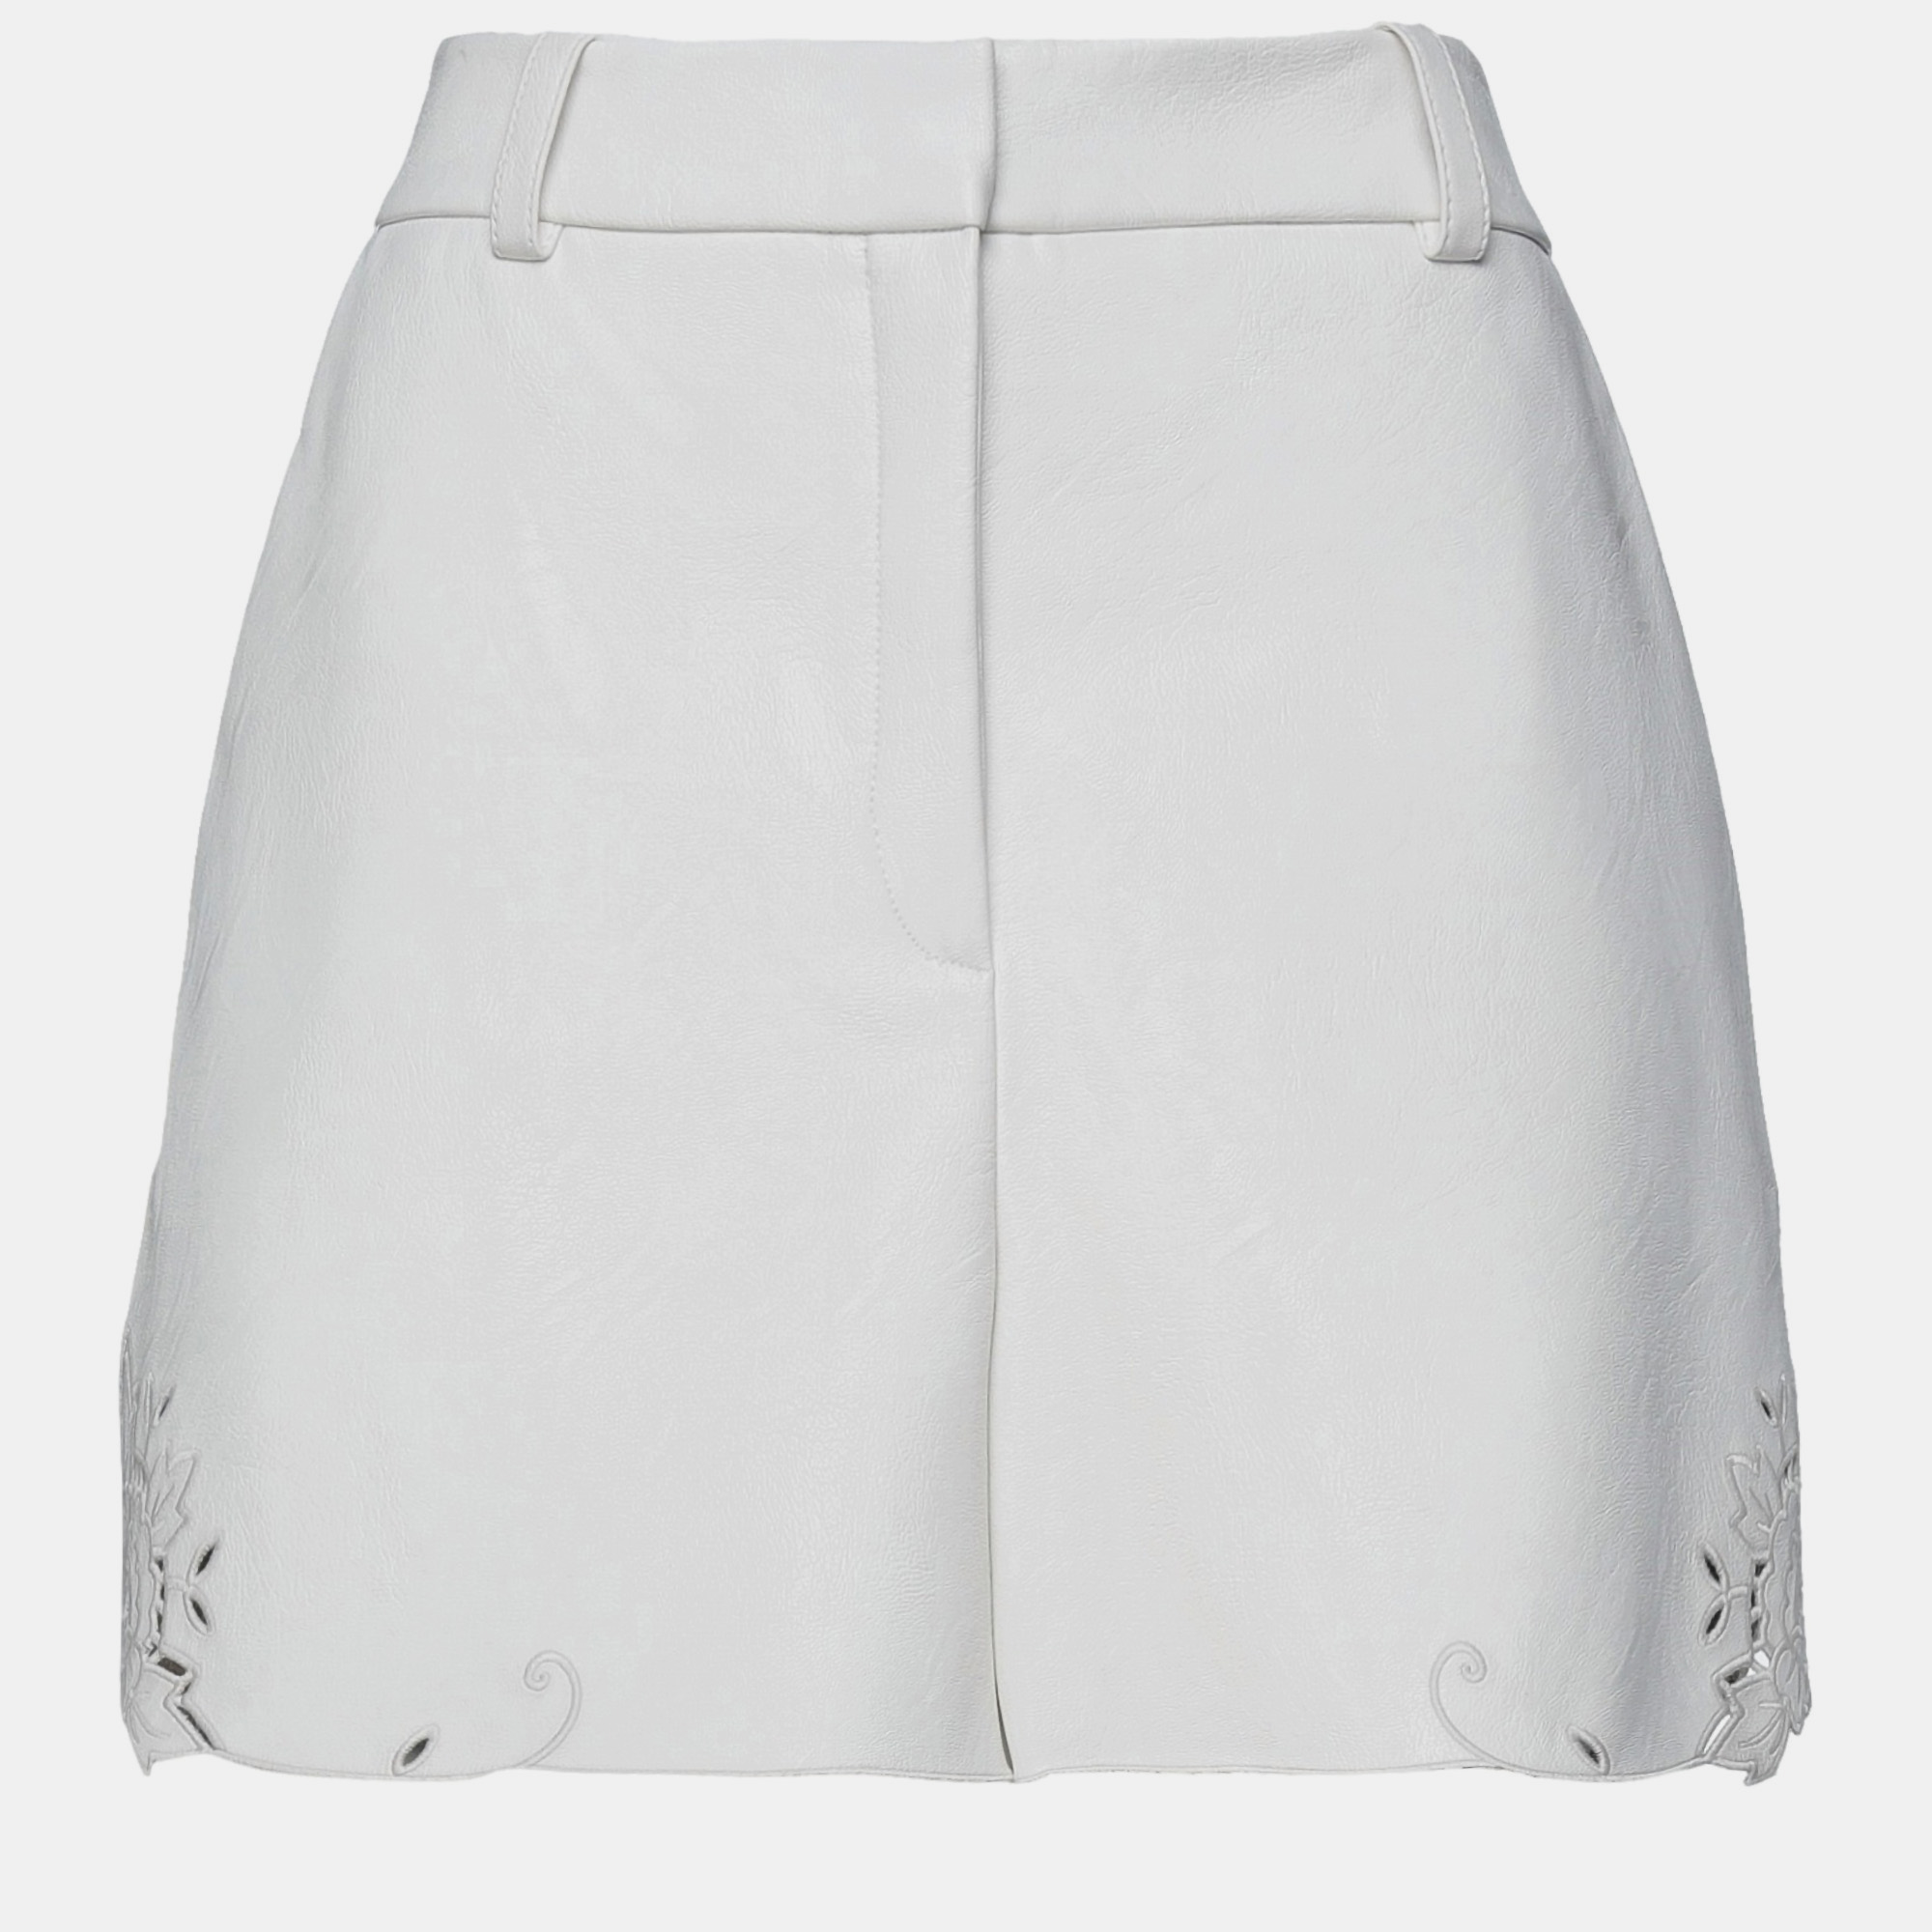 Stella mccartney polyester shorts 46